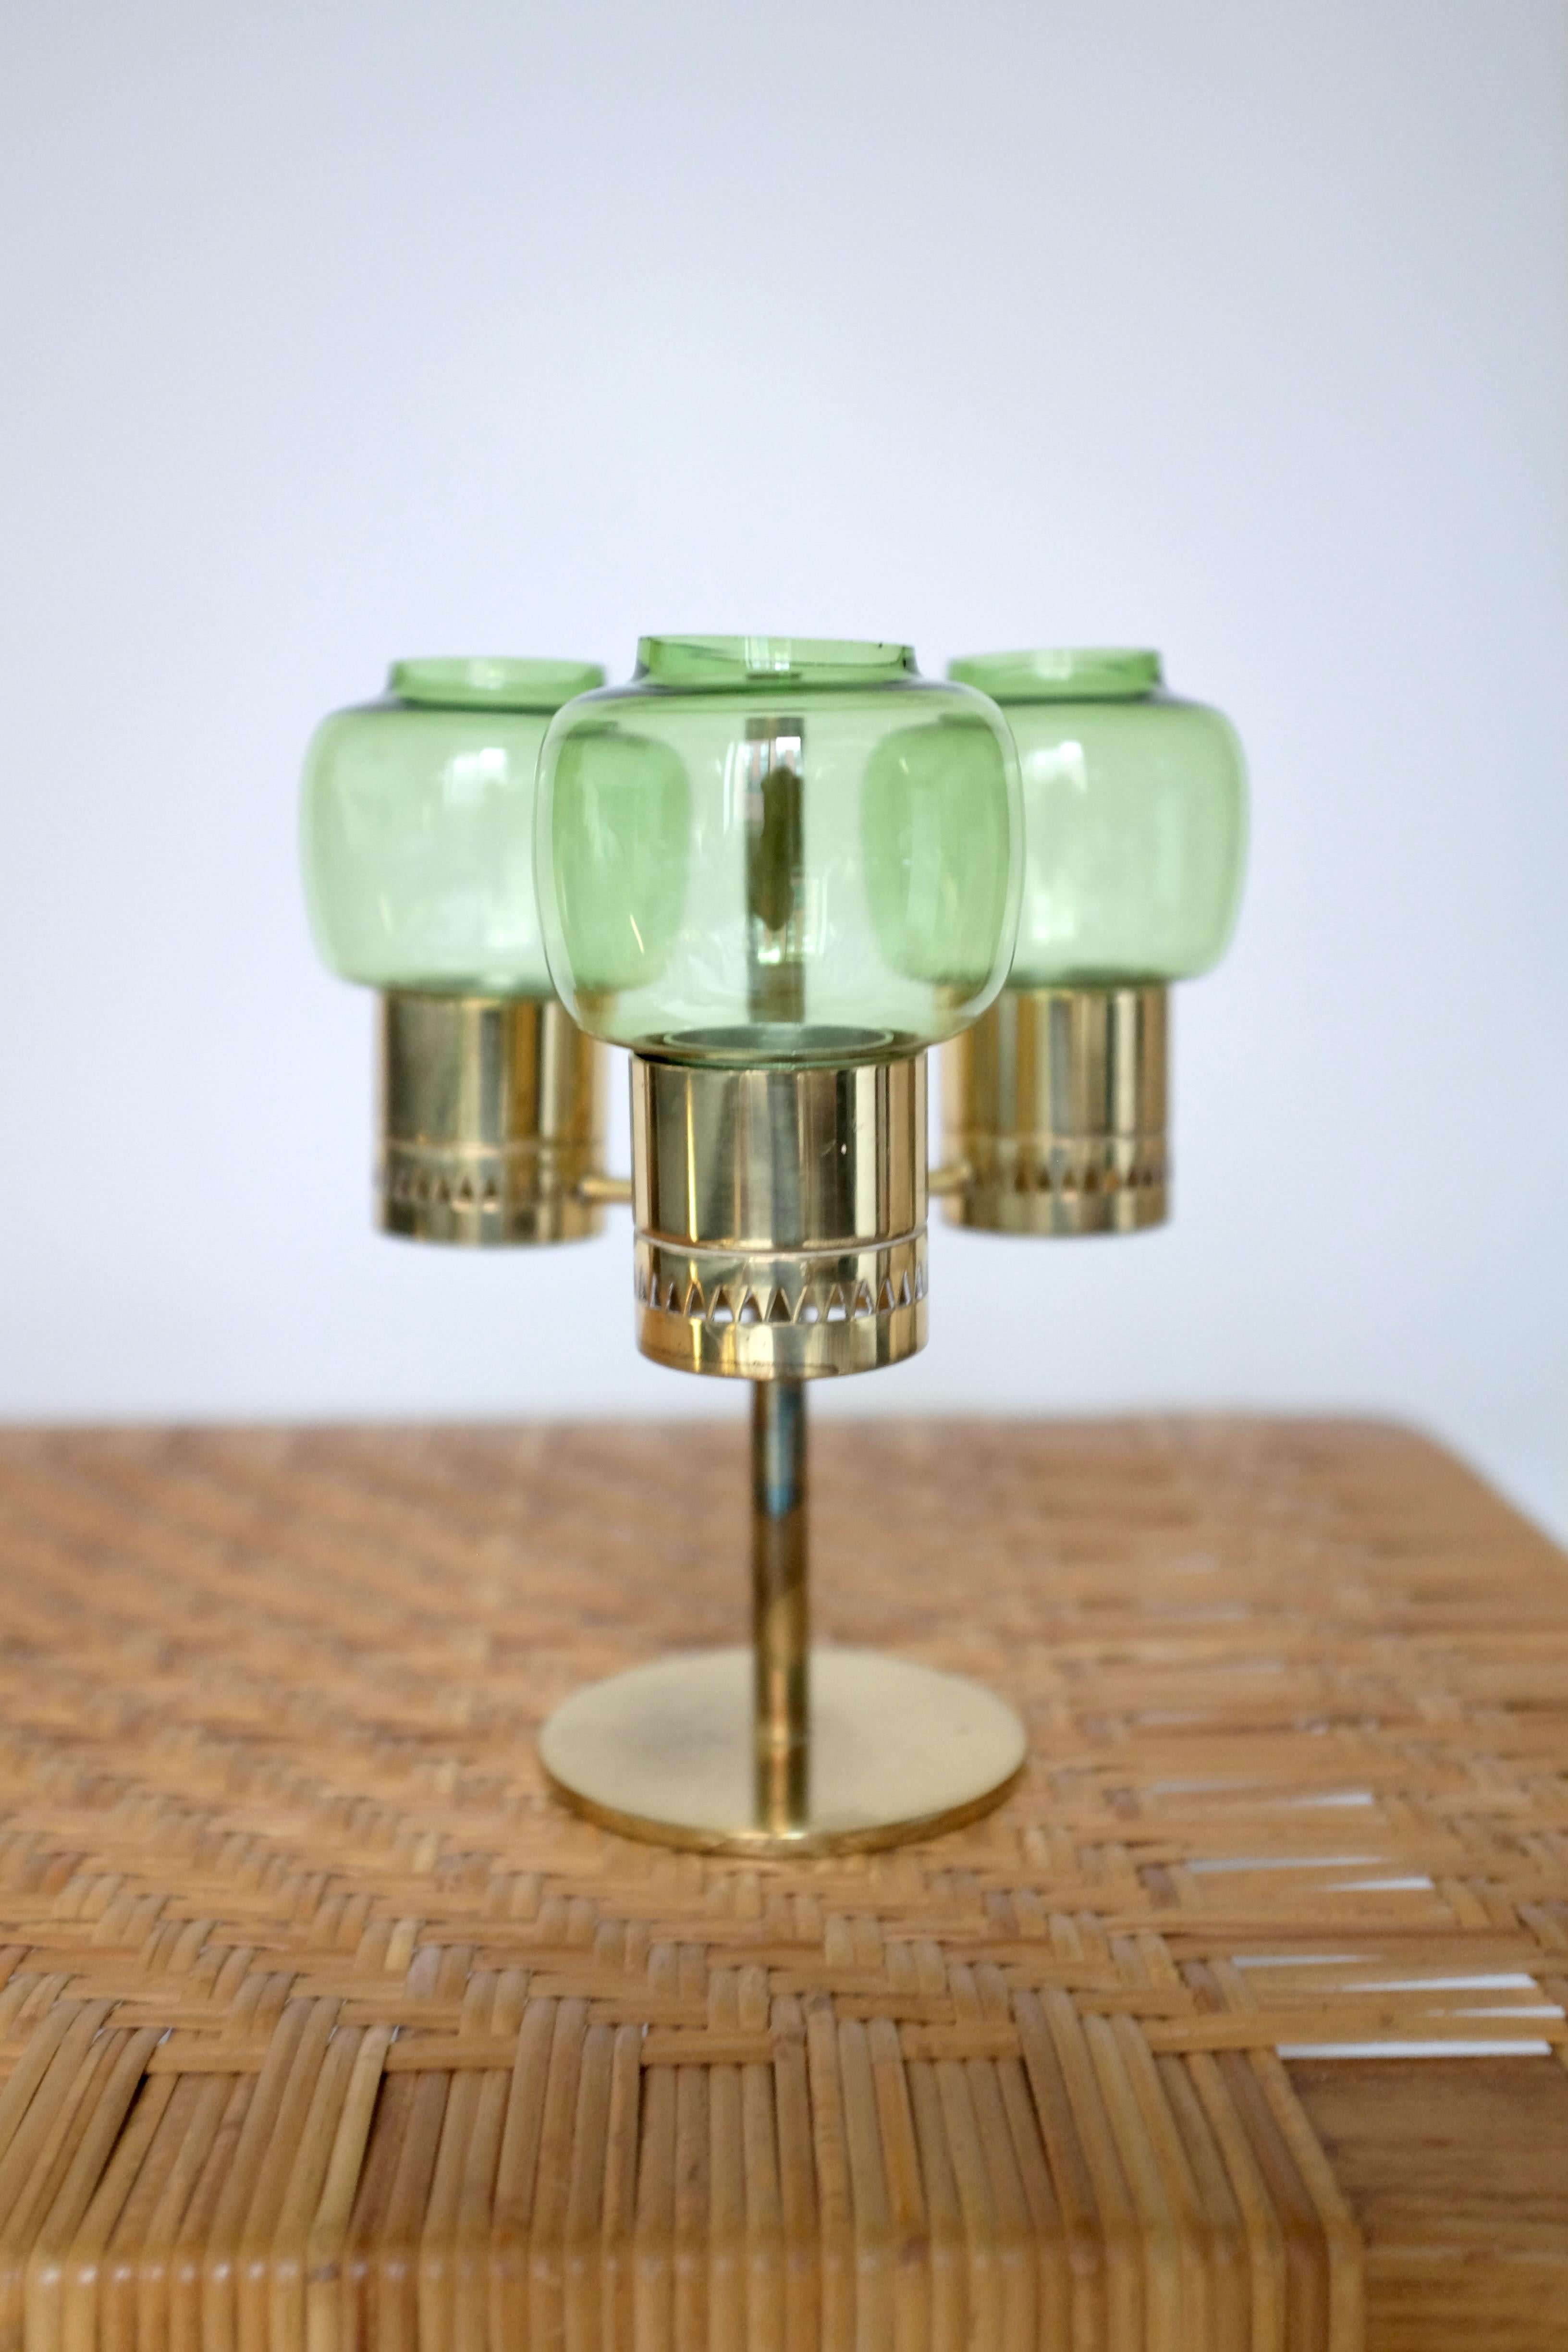 Magnifique bougeoir en laiton avec 3 lanternes vertes par Hans-Agne Jakobsson. Produit par la propre entreprise du designer à Markaryd, Suède, dans les années 1950 et en très bon état vintage avec une usure appropriée à l'âge du laiton. 

Créateur